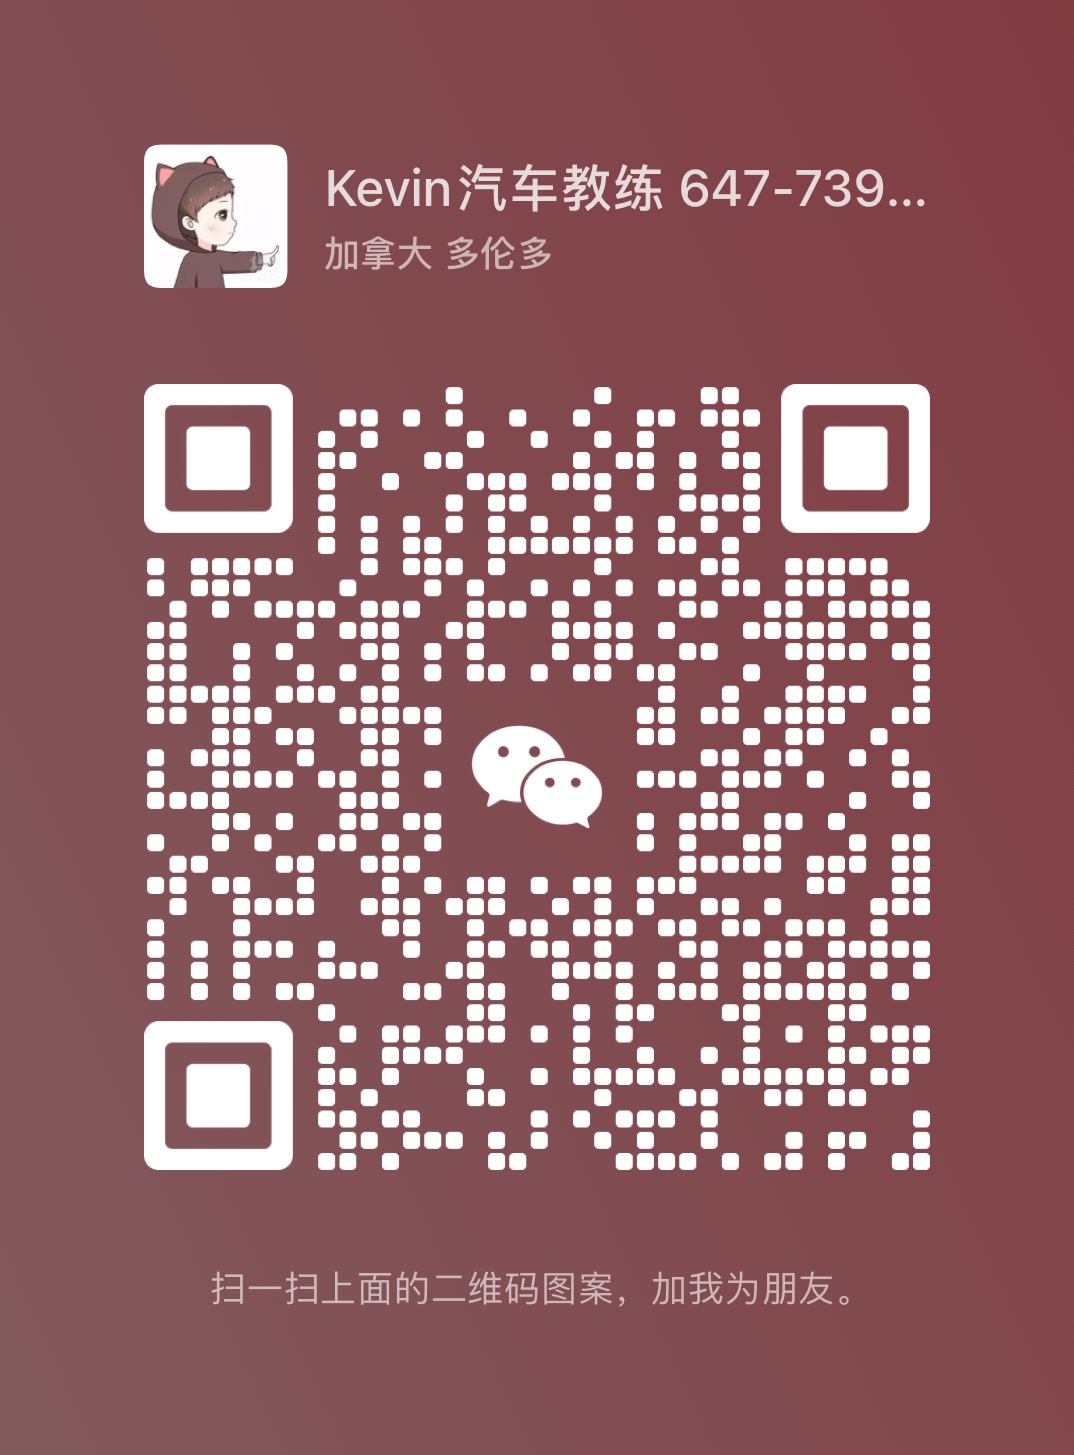 WeChat Image_20221129201805.jpg